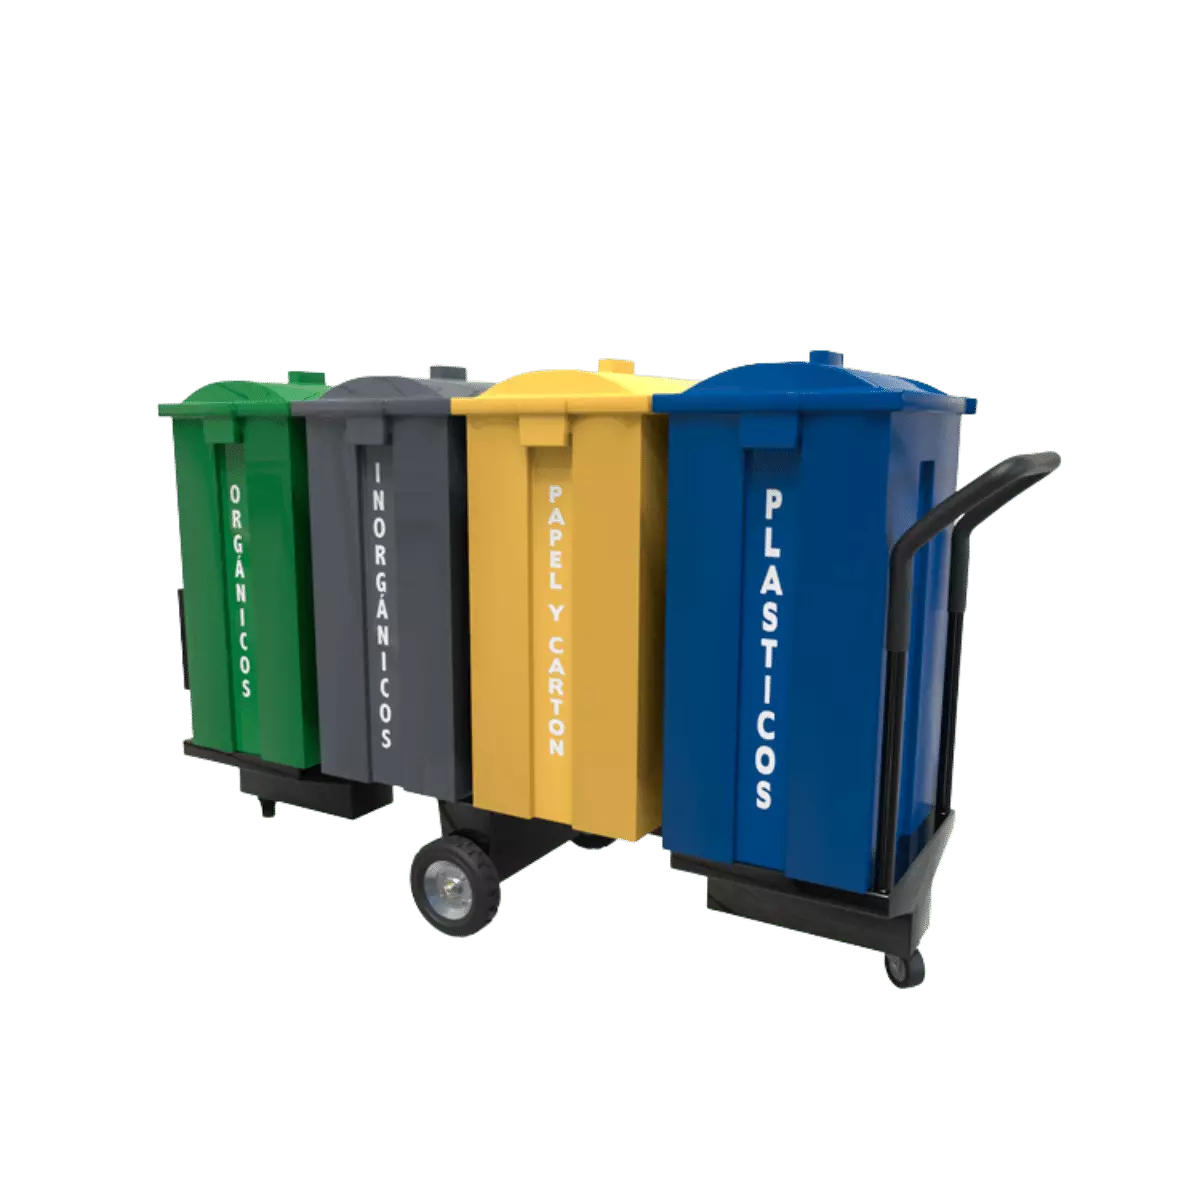 Contenedor de desperdicios y reciclaje varios colores